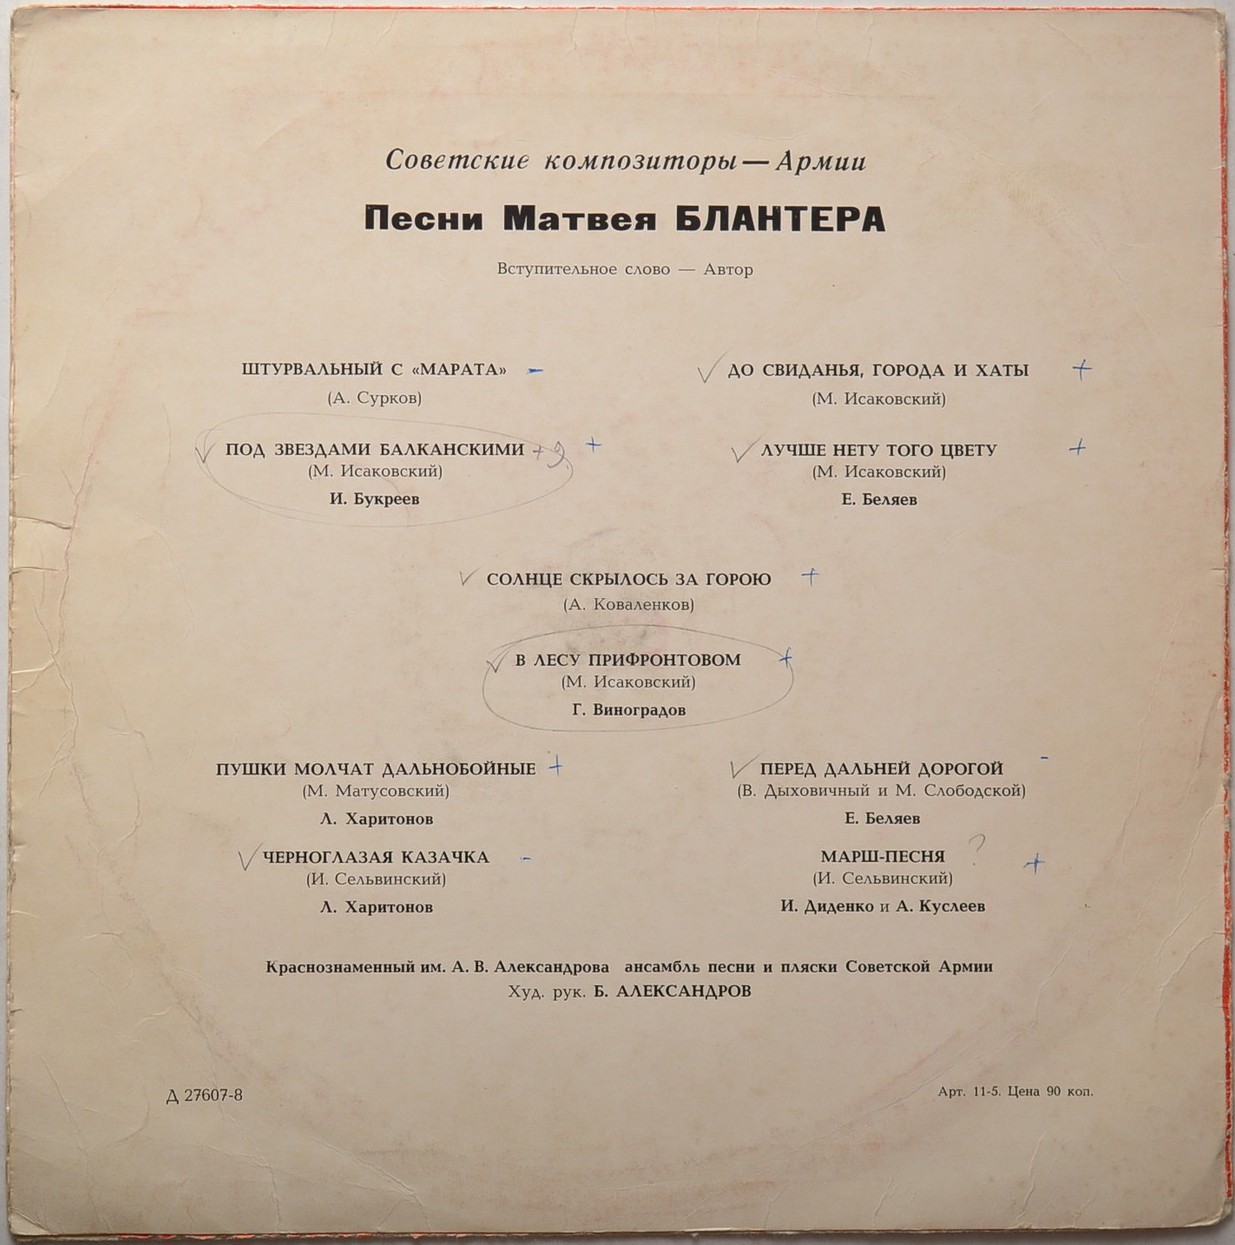 Песни М.И. БЛАНТЕРА (1903). Из цикла "Советские композиторы — Армии"